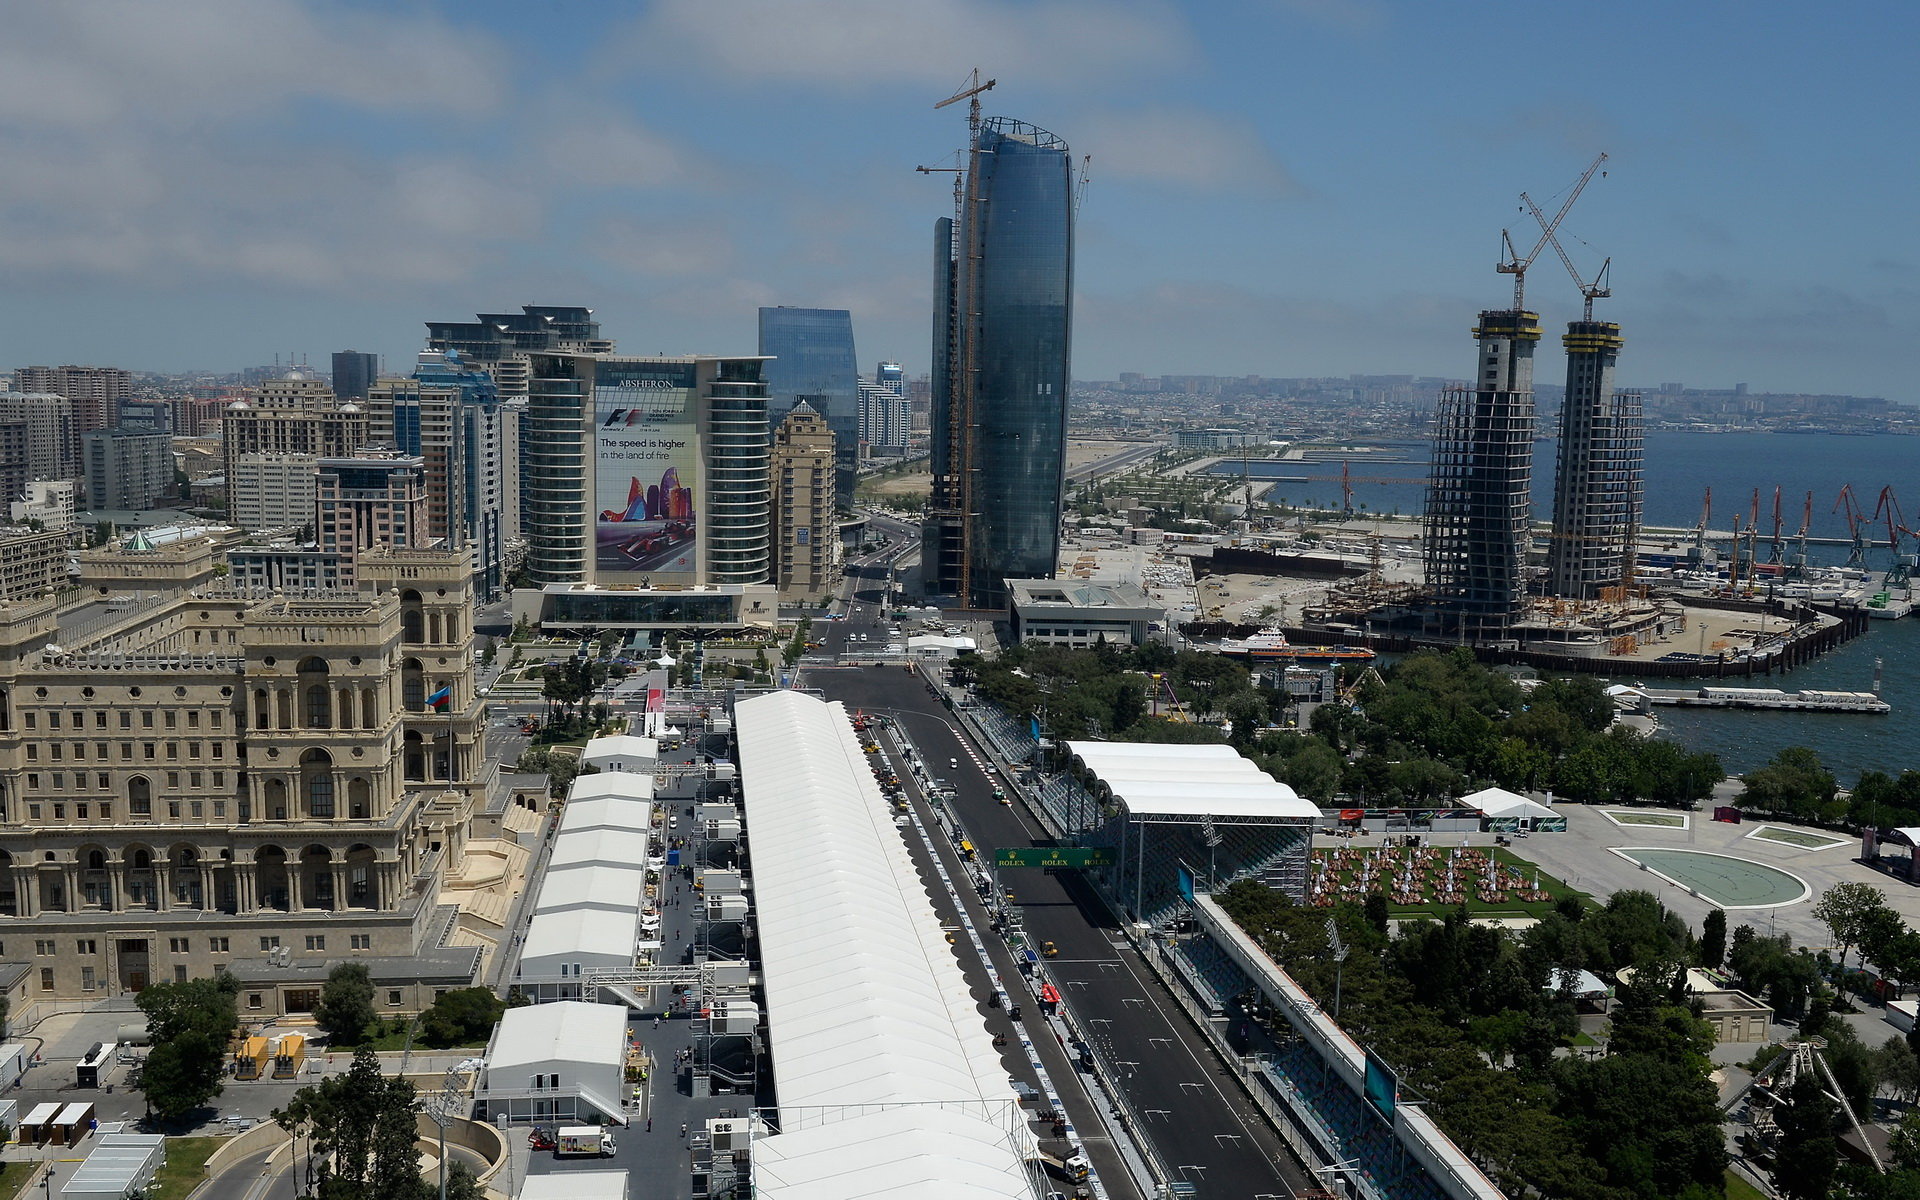 Liberty Media hovoří o zvýšení kvalit jednotlivých Grand Prix. Jak dopadne Baku?